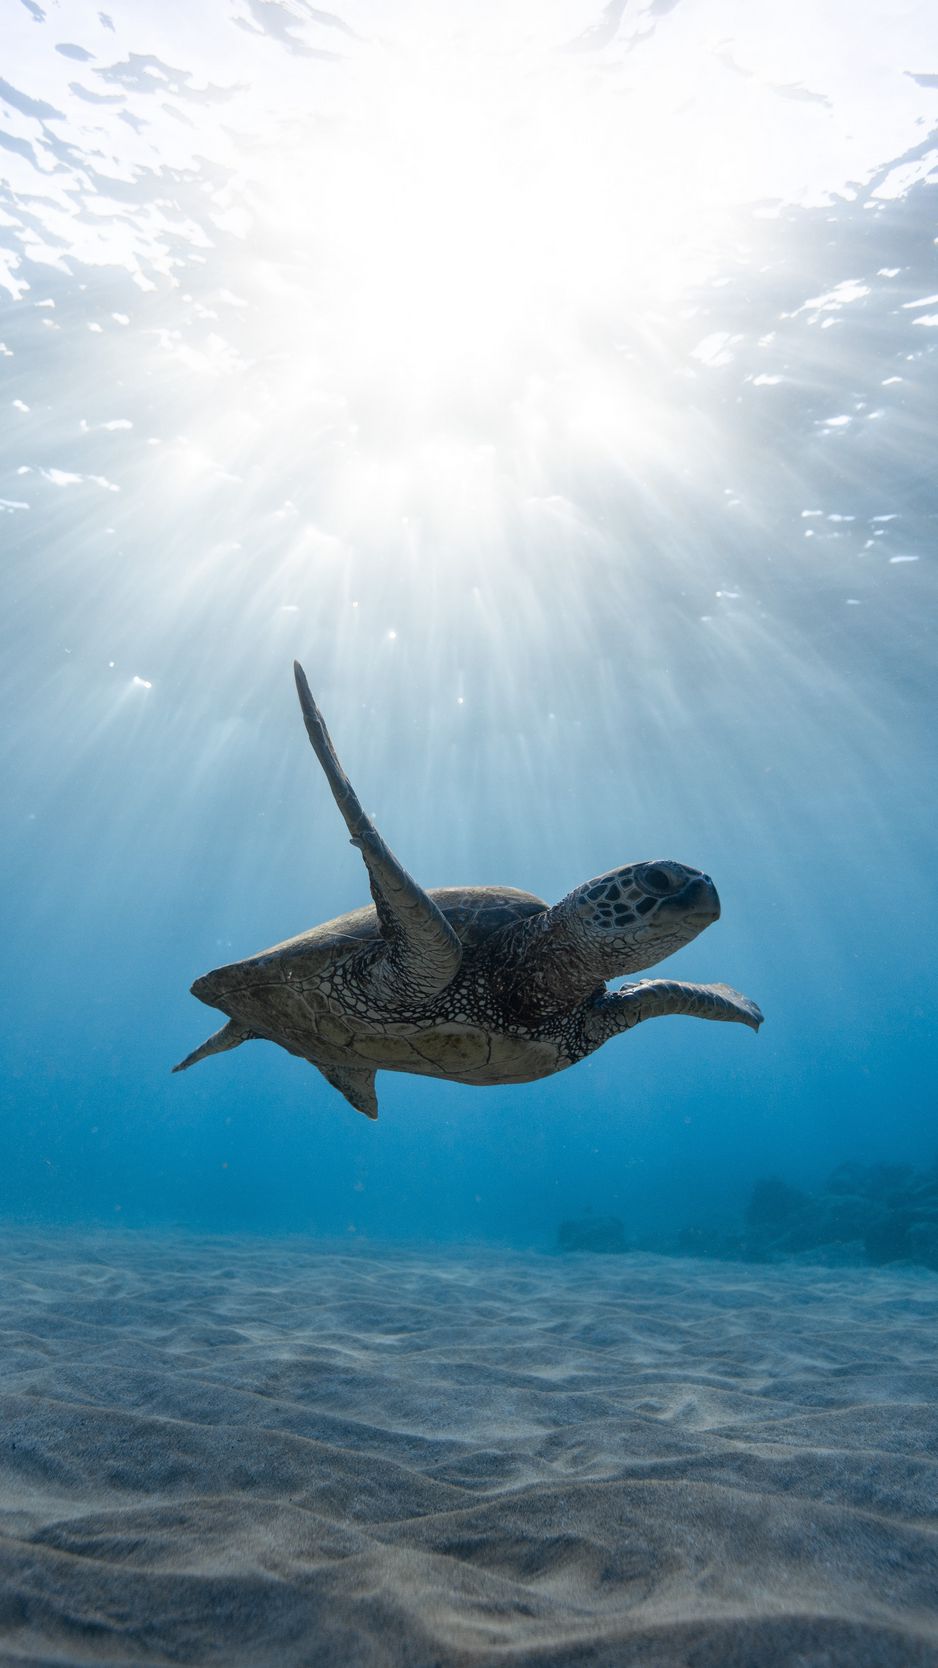 Hãy cho mình trải nghiệm về thế giới dưới nước với những bức ảnh đặc trưng về rùa biển xinh đẹp. Với những tone màu xanh dịu nhẹ và chất lượng hình ảnh sắc nét, bạn sẽ có cảm giác như đang trực tiếp chứng kiến cuộc sống yên bình của đại dương. Những chiếc vây và bộ áo làm bằng vảy cá nổi bật trên nền màu xanh thẳm, tạo nên 1 không gian đầy tính nghệ thuật và tuyệt vời.